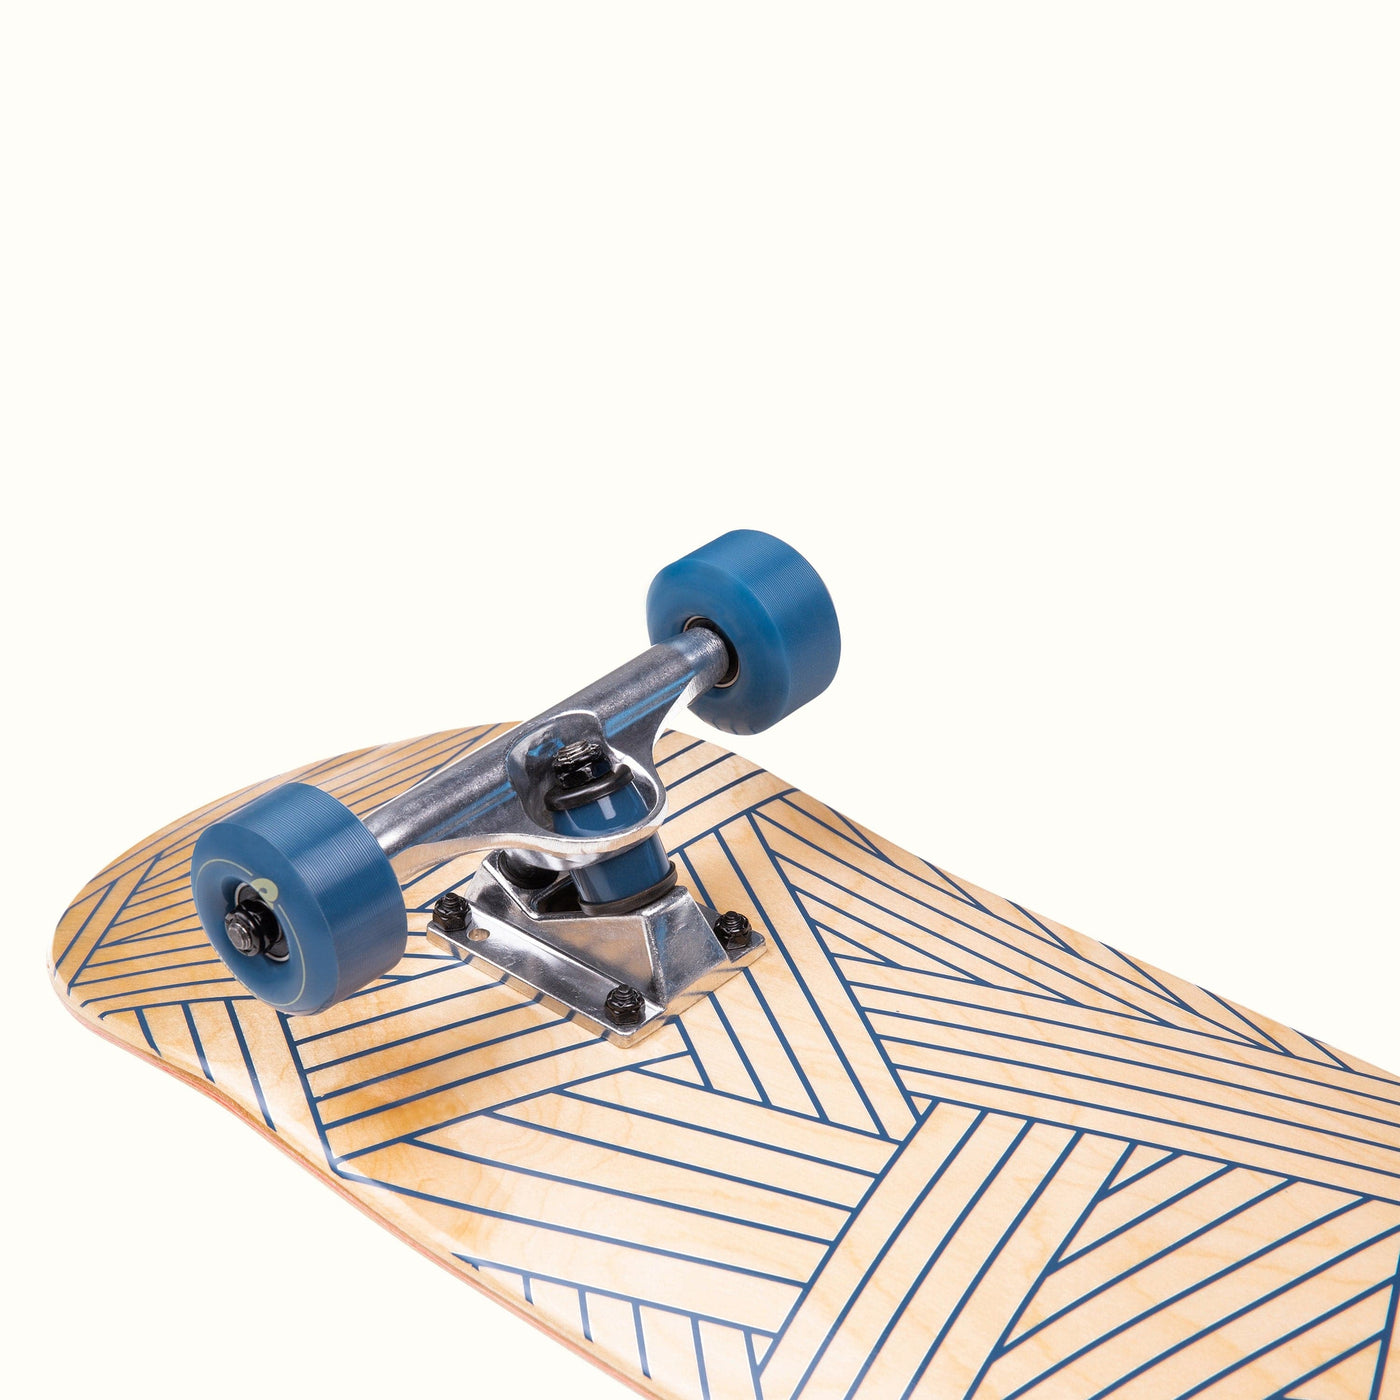 Alameda Skateboard Woven Navy | Woven Navy